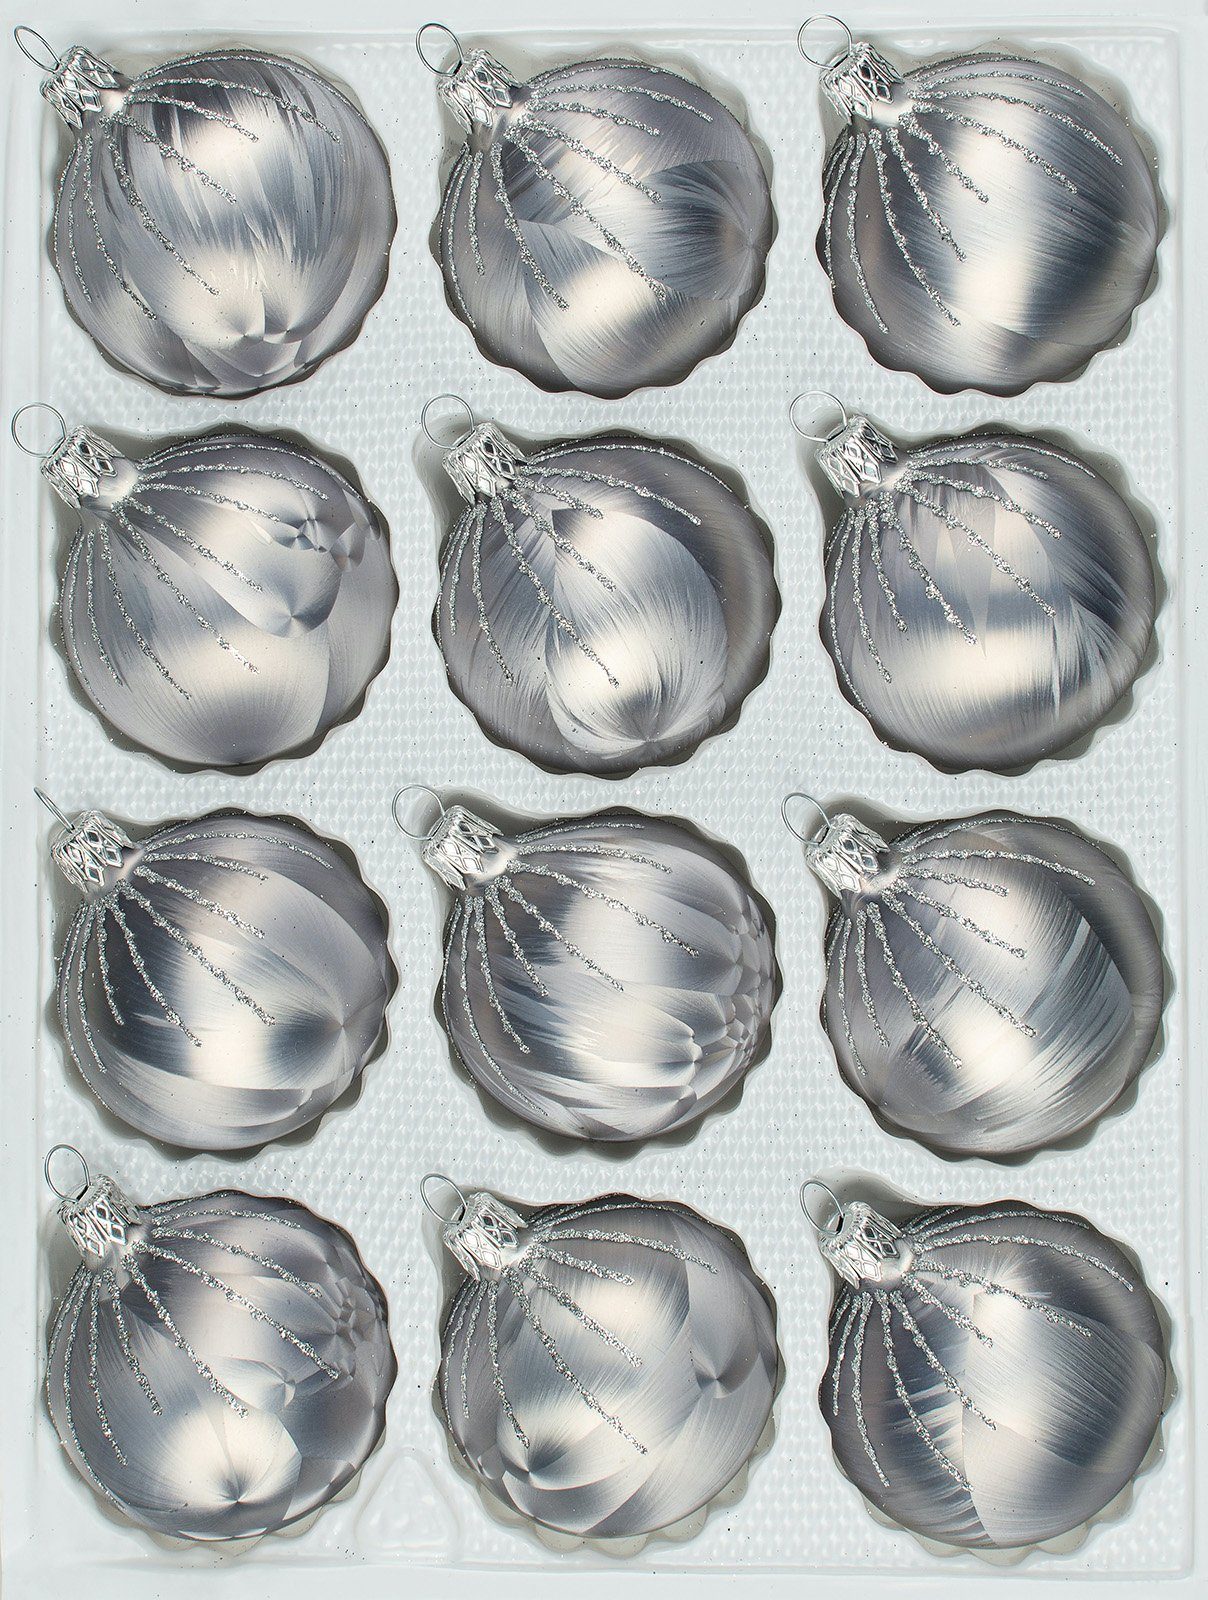 Navidacio Weihnachtsbaumkugel 12 tlg. Glas-Weihnachtskugeln Set in "Ice Grau Silber" Regen